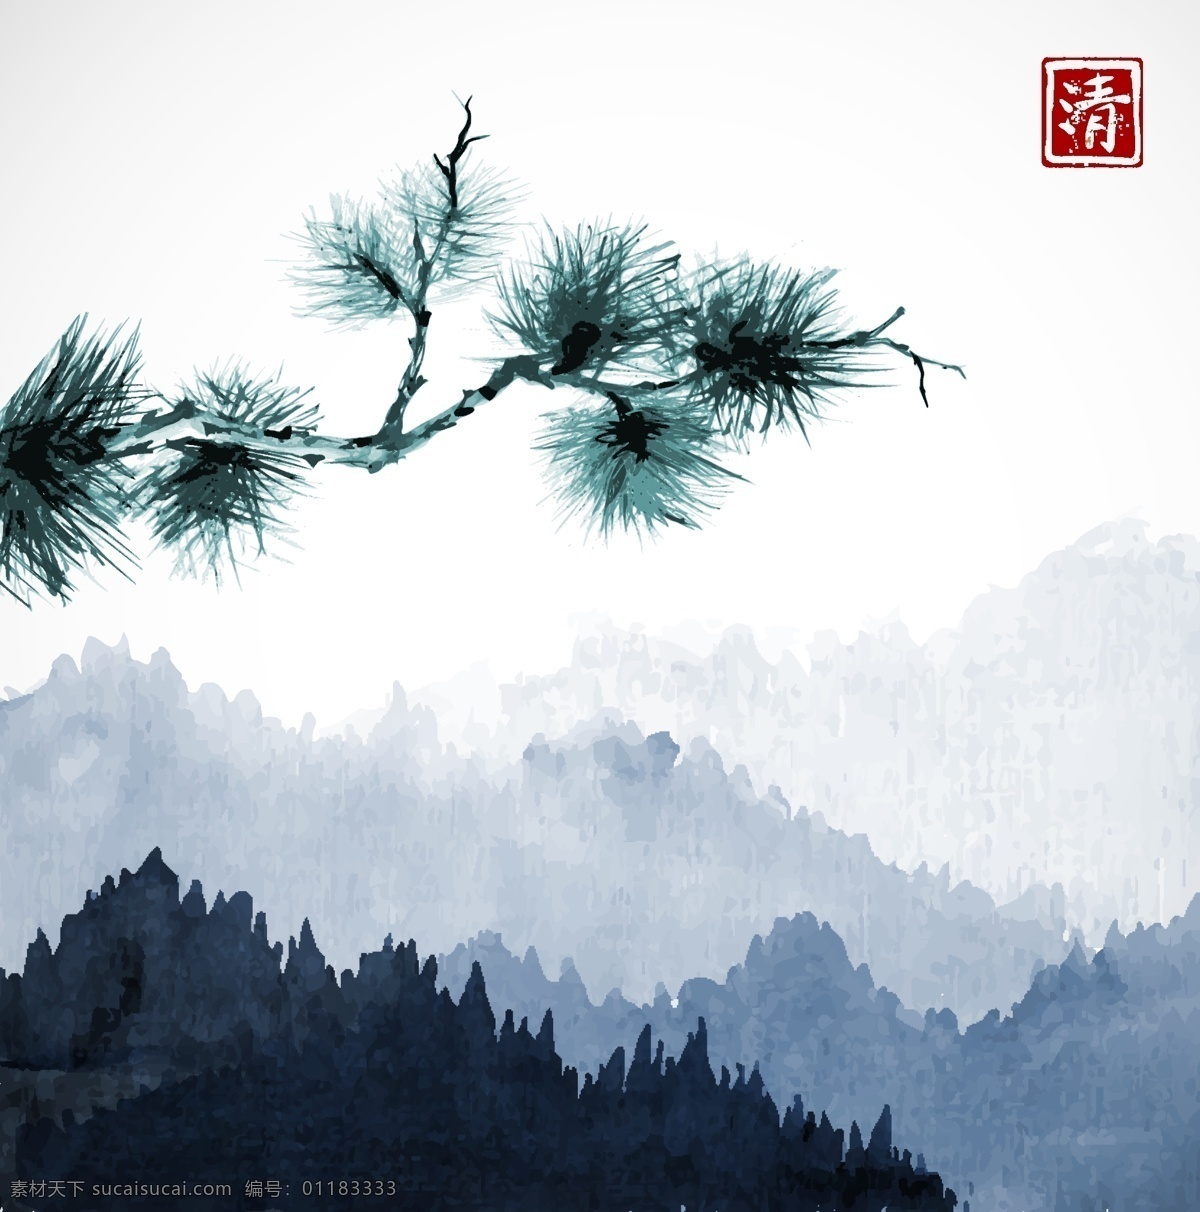 矢量水墨画 矢量松树 一颗松 中国风 中国画 环境设计 景观设计